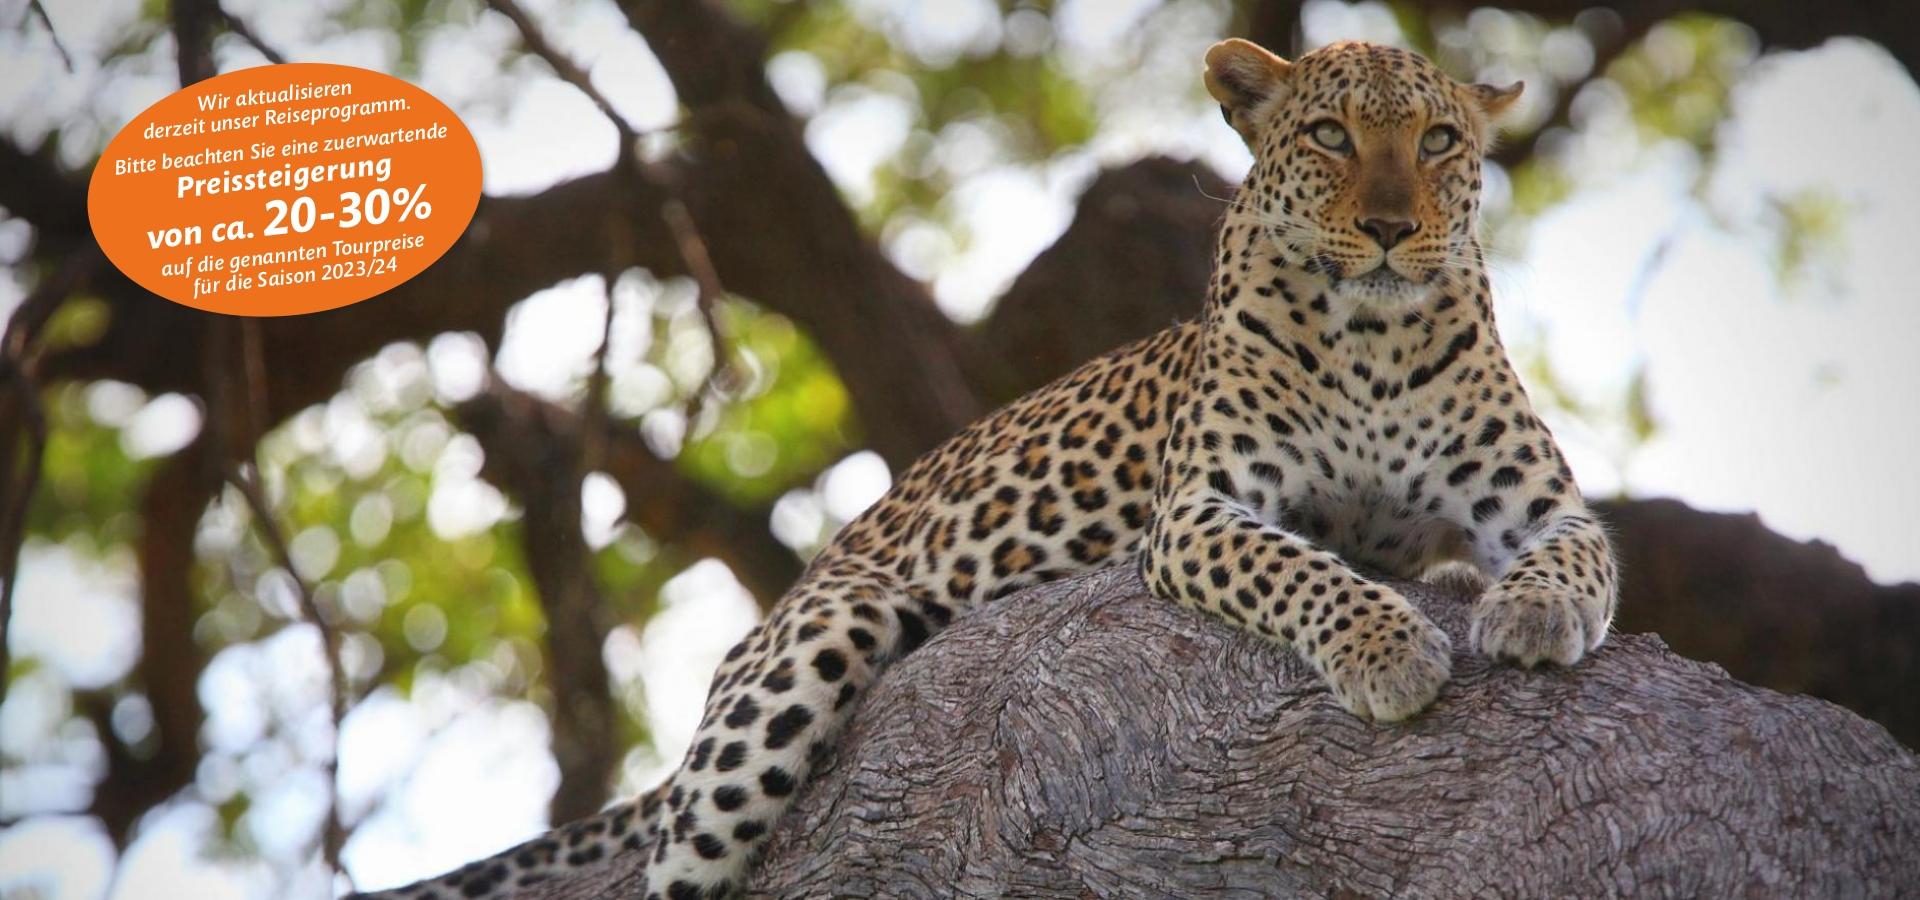 Afrika Safaris - Leoparden und andere wilde faszinierende Tiere auf einer Safari entdecken